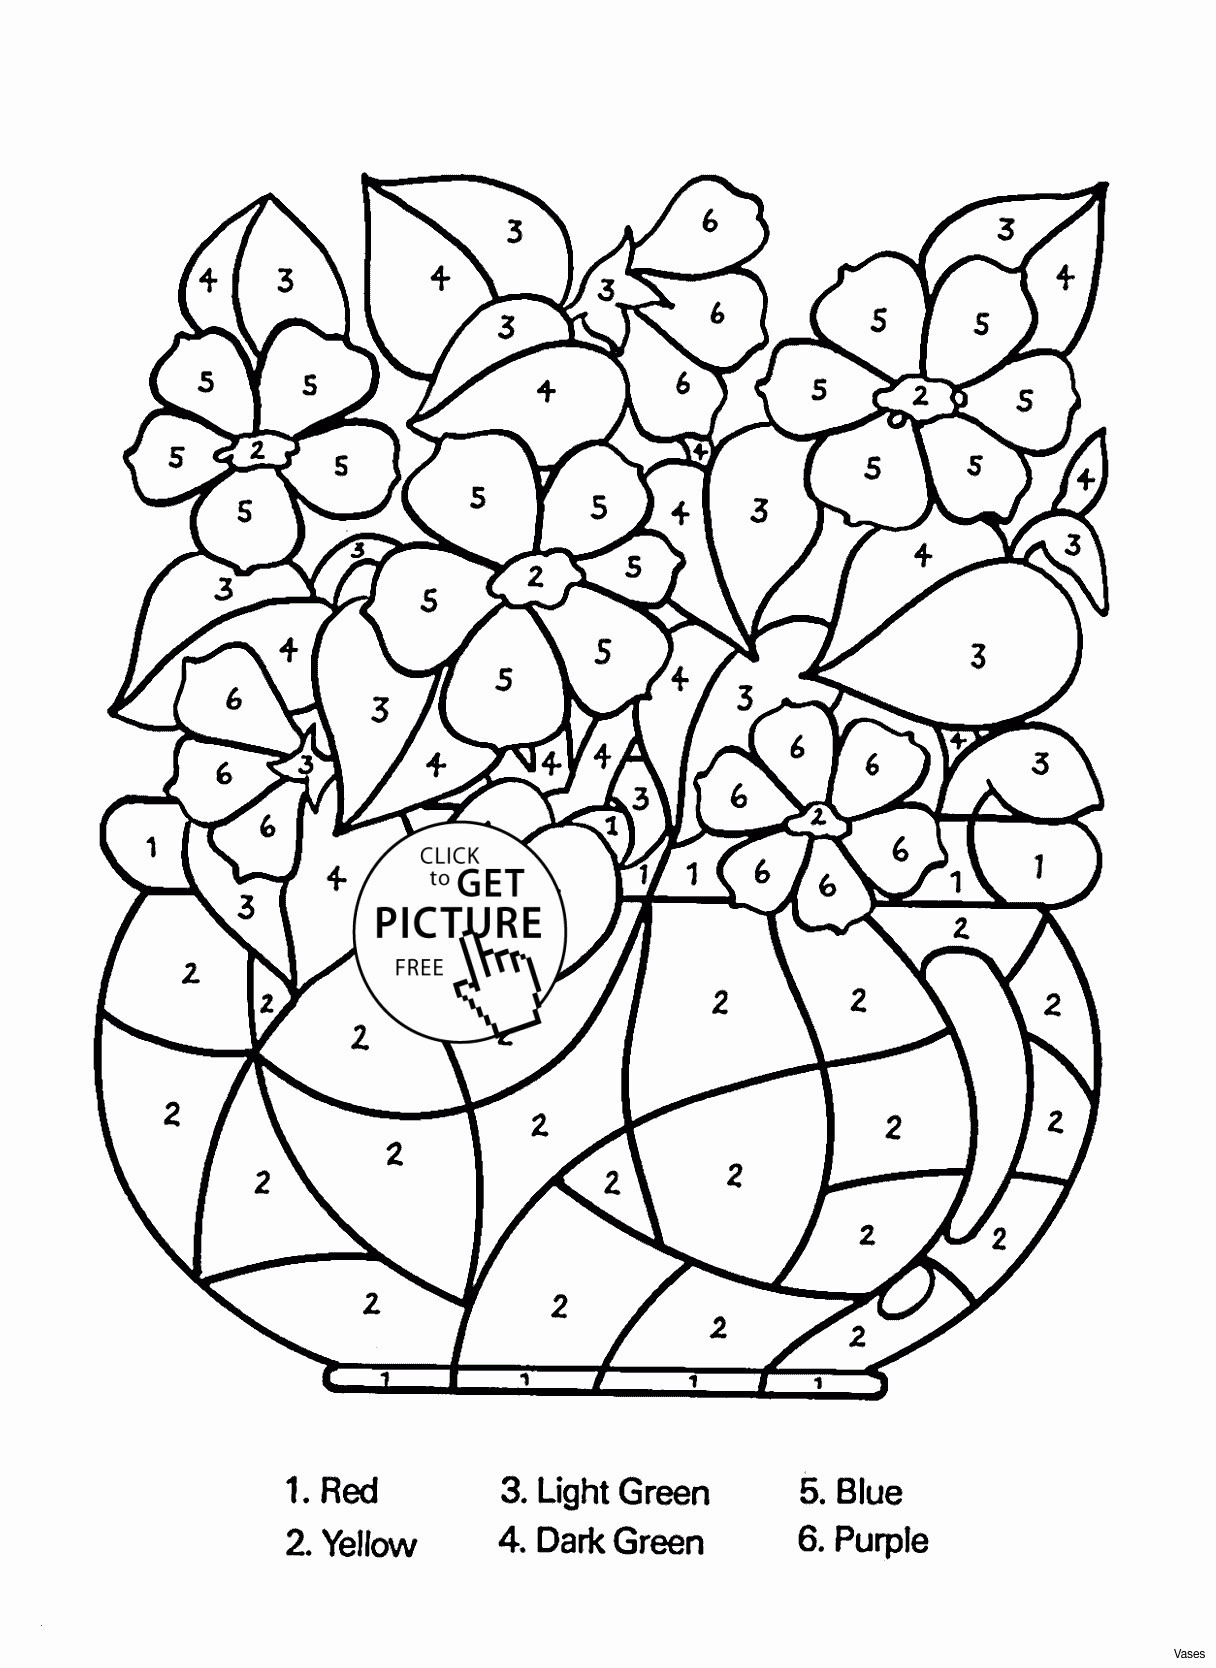 van gogh vase with flowers of please coloring pages flower coloring pages elegant vases flower in please coloring pages flower coloring pages elegant vases flower vase coloring page pages